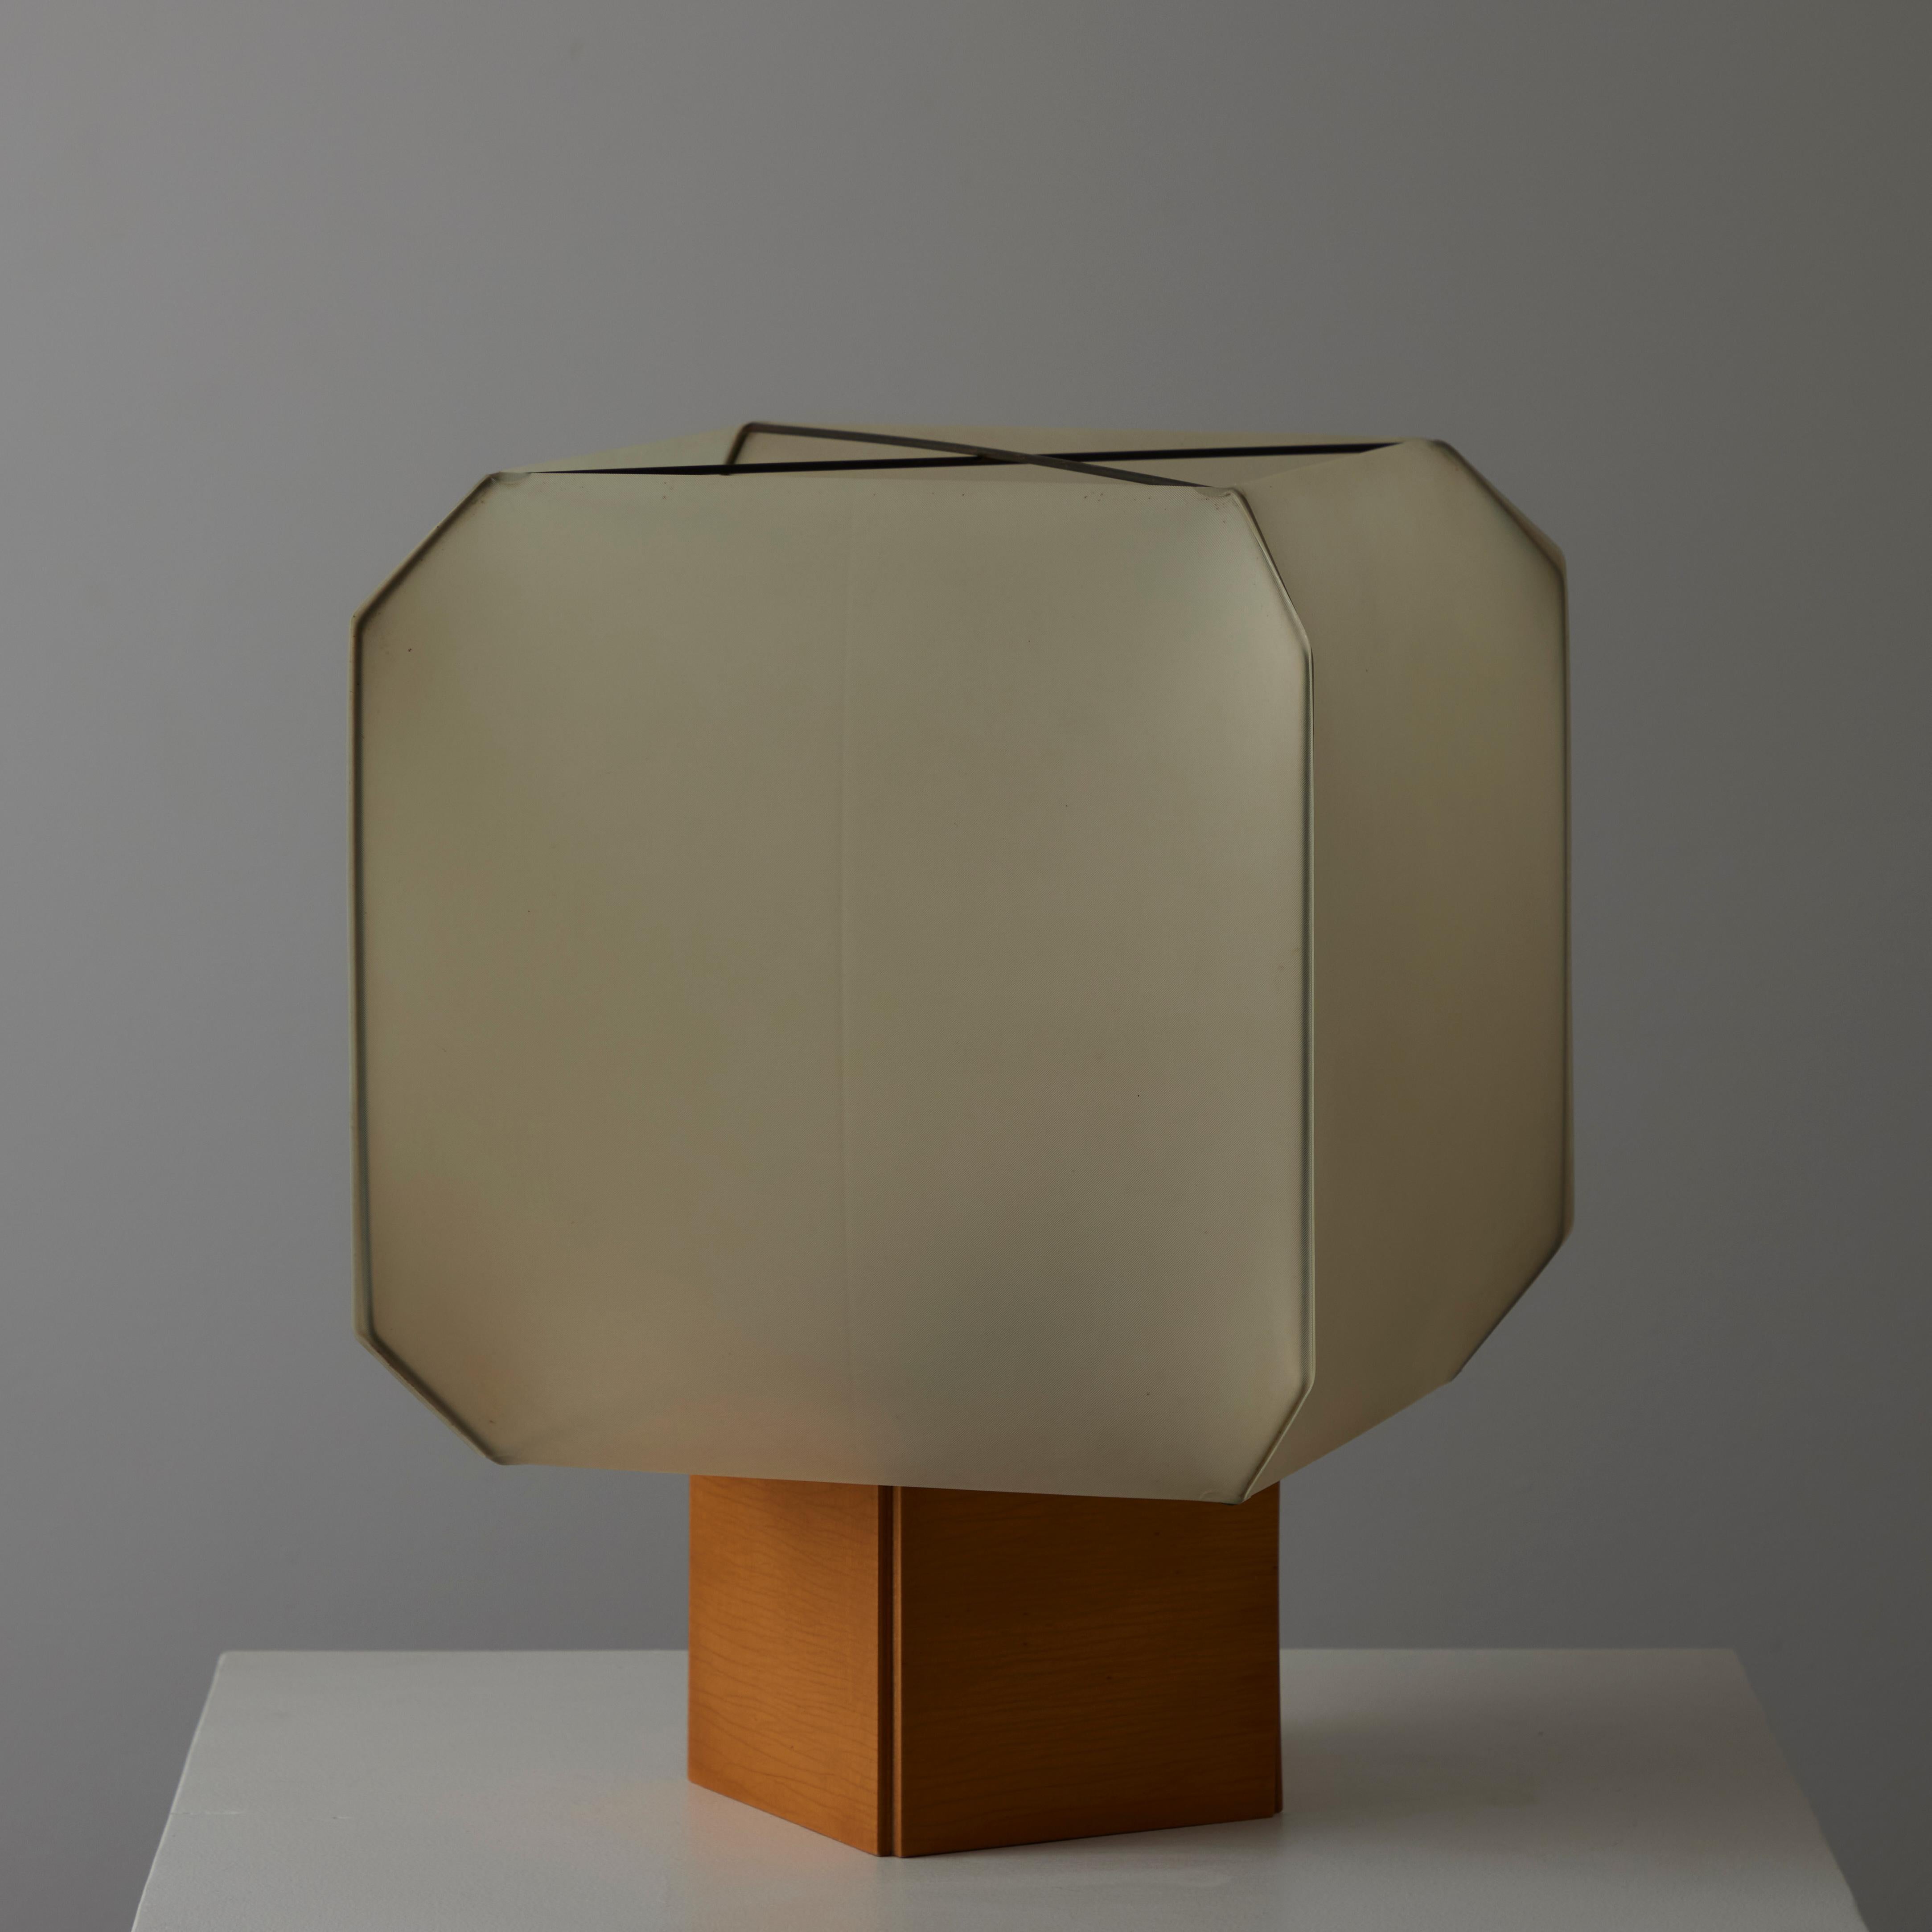 'Bali' Table Lamp by Bruno Munari for Danese 1